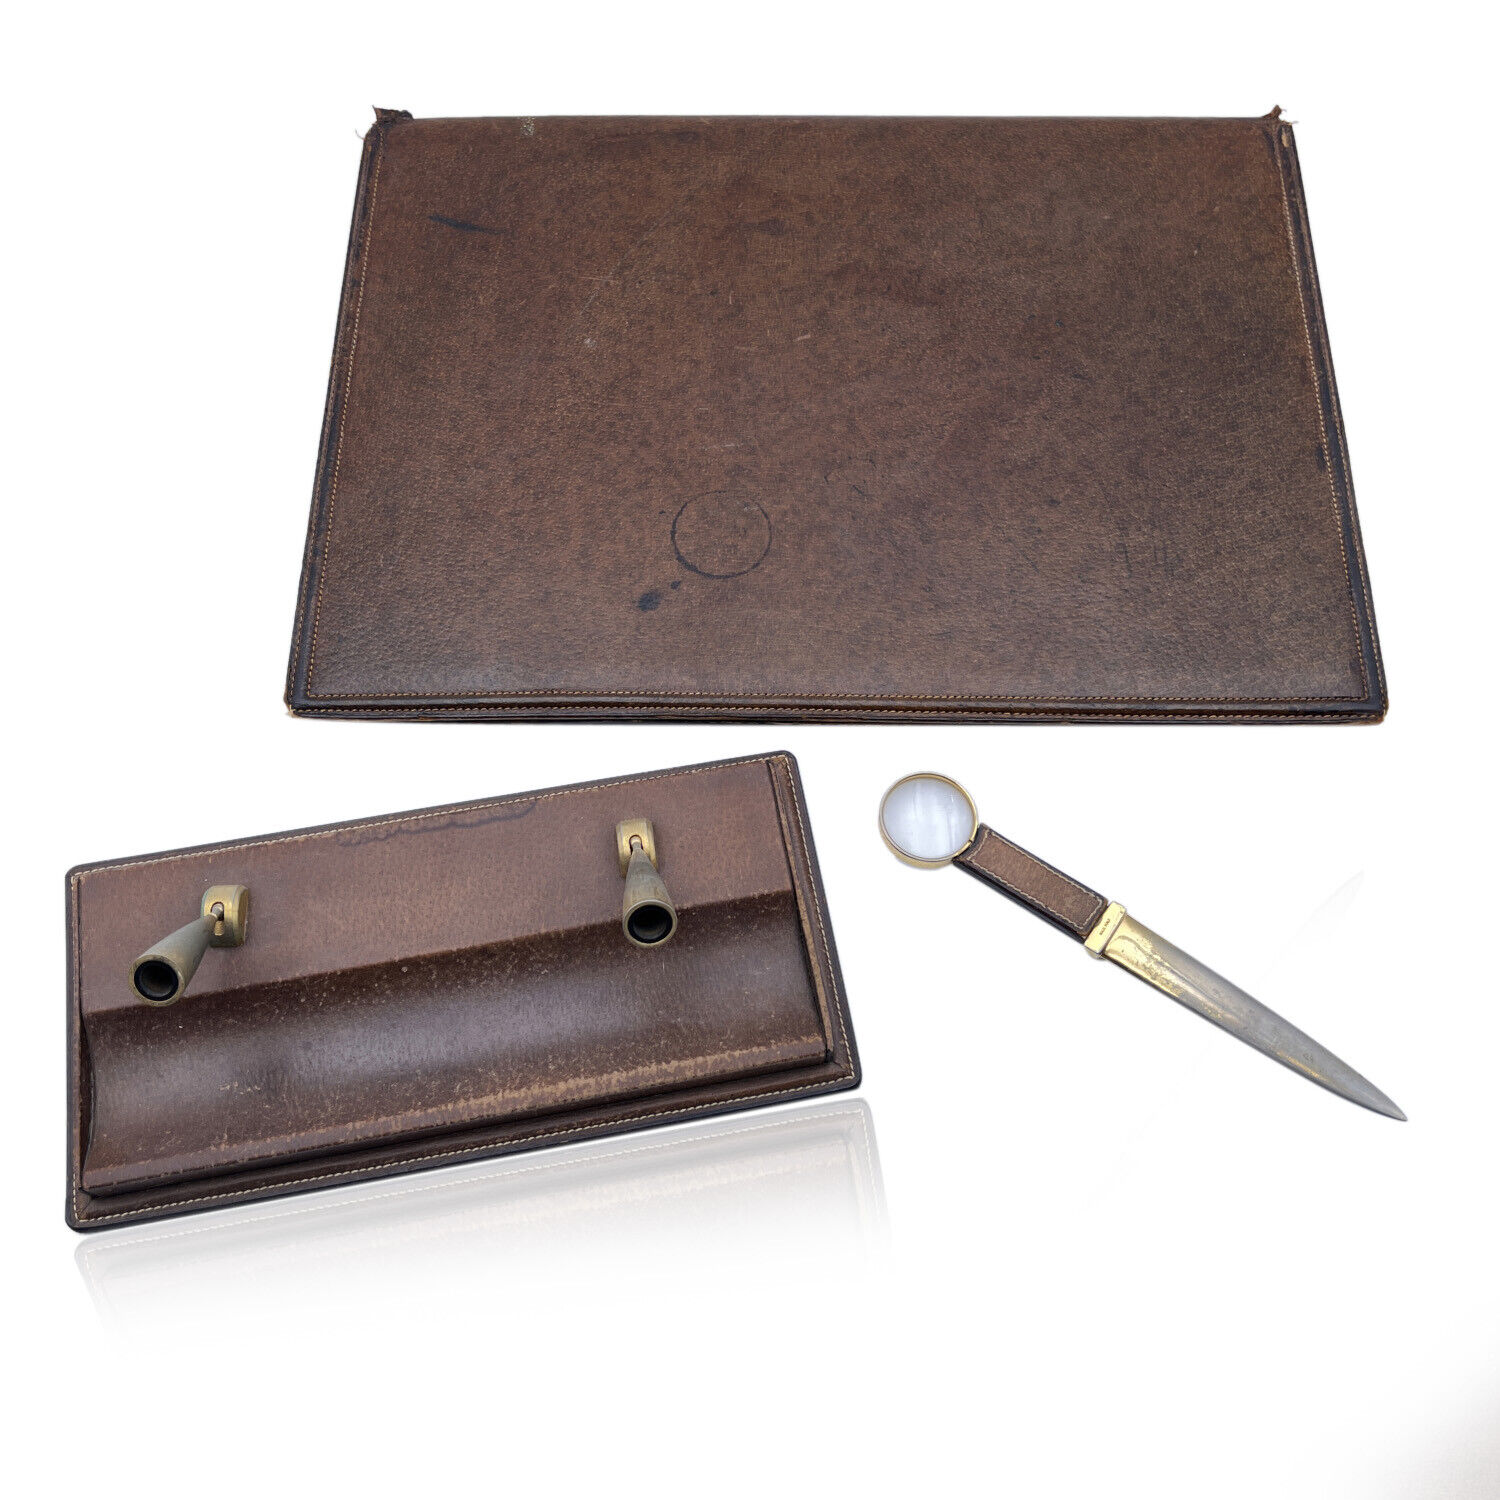 Authentic Gucci Vintage Brown Leather Desk Set Blotter Pen Holder Opener